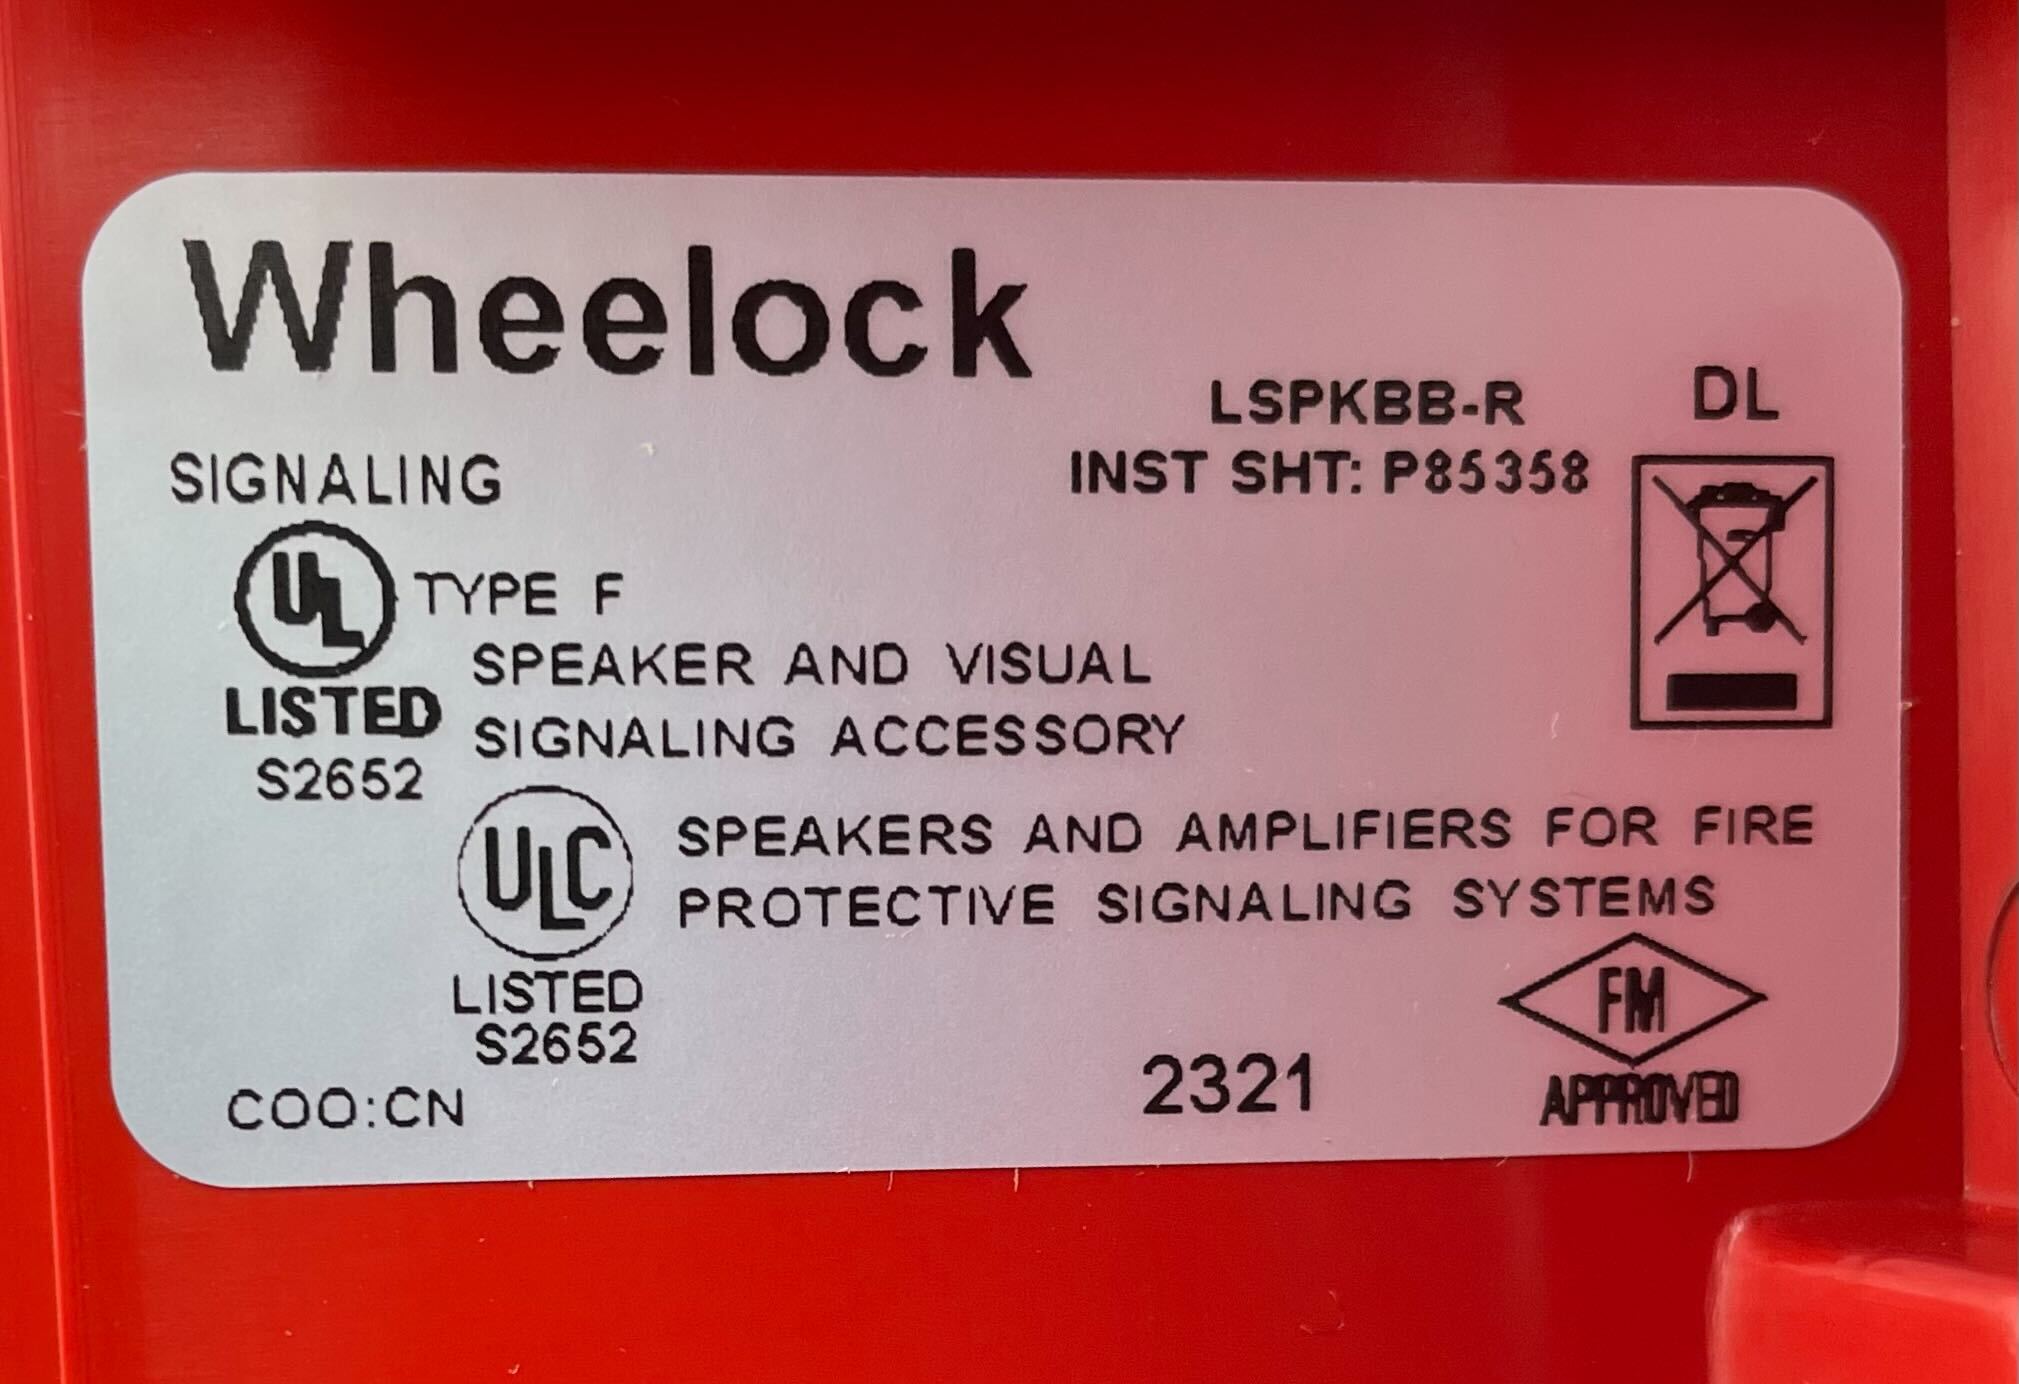 Wheelock LSPKBB-R